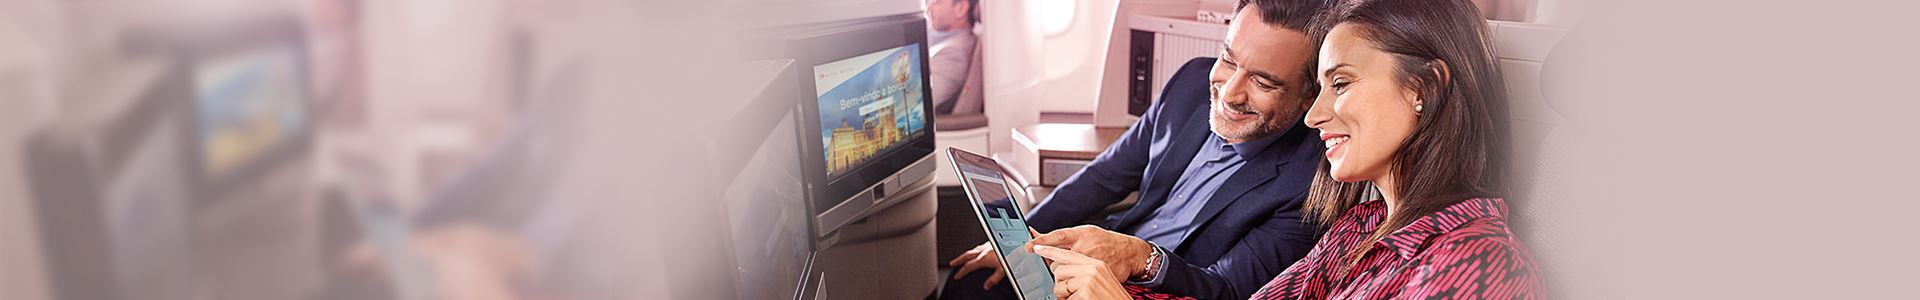 Nahaufnahme einer lächelnden Frau und eines lächelnden Mannes, die in einem Flugzeug sitzen. Die Frau hält ein Tablet in der Hand, und der Mann blickt darauf. Sie zeigen beide auf den Bildschirm des Tablets. Vor ihnen befinden sich zwei Bildschirme, die in den Sitzen des Flugzeugs eingebaut sind.